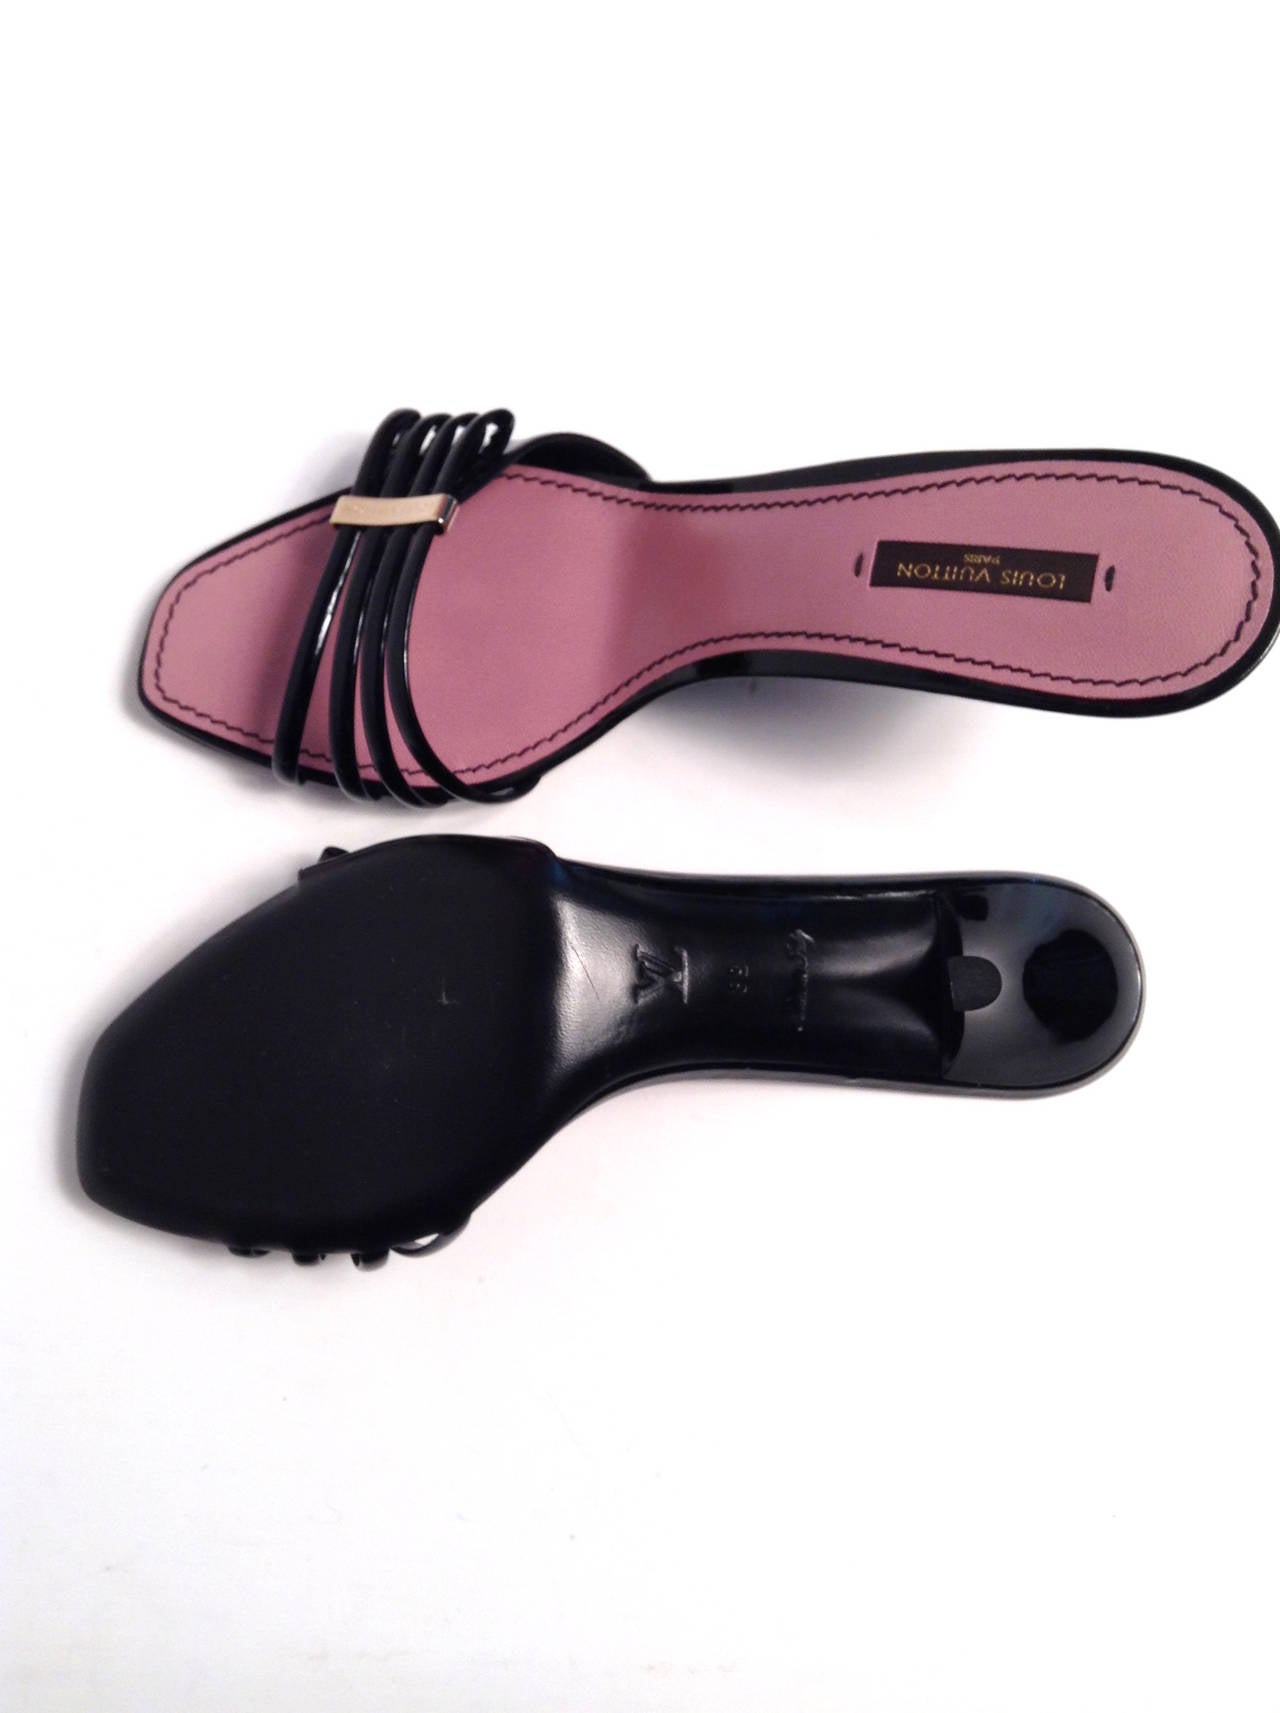 Louis Vuitton Black Patent Cherry Open Toe Mule Size 39/8 For Sale 1